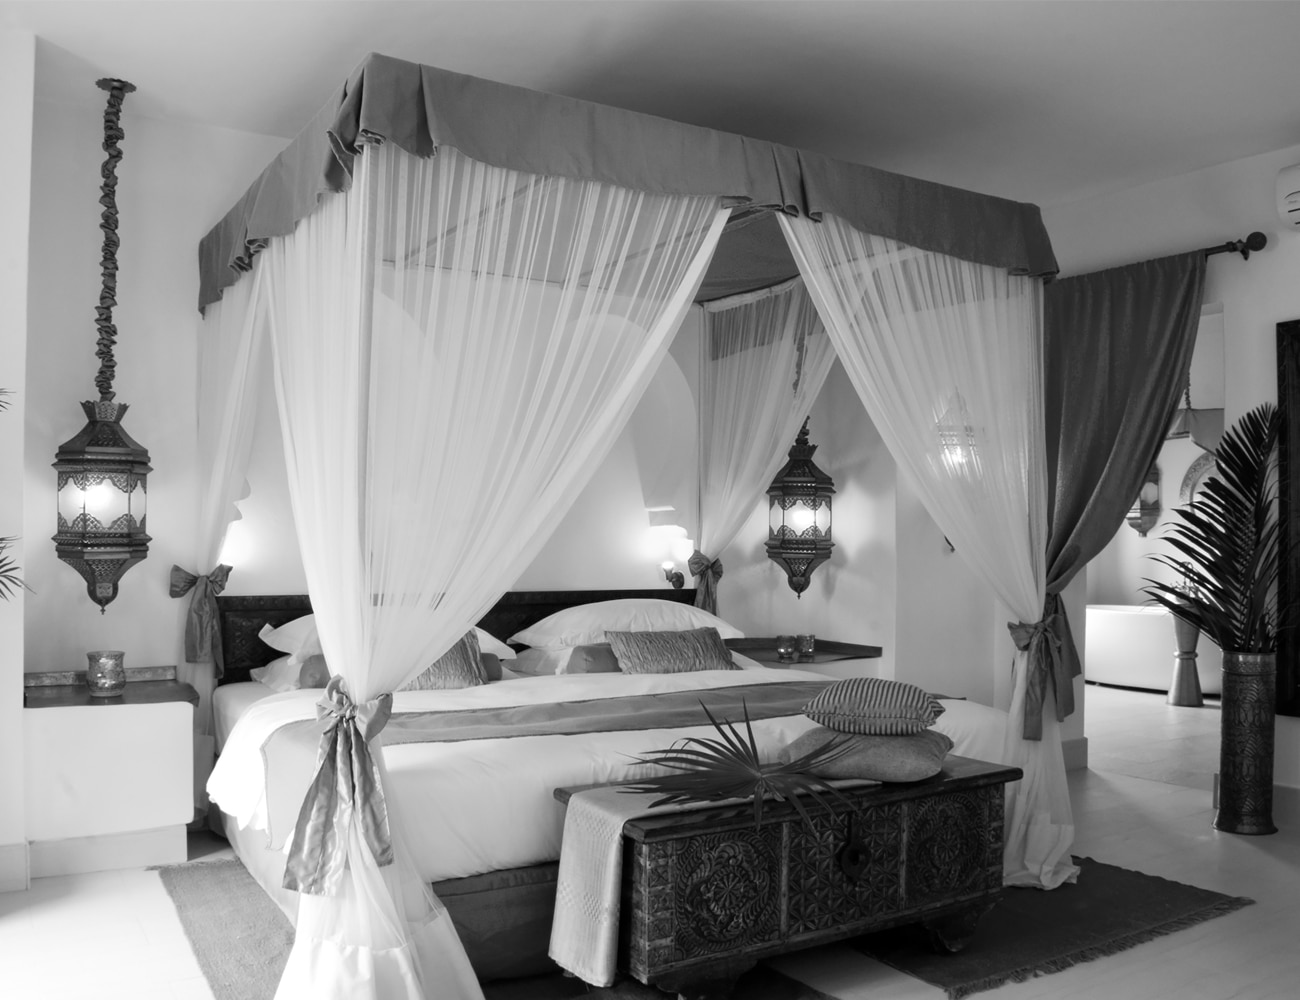 Bedrooms at Baraza Resort and Spa